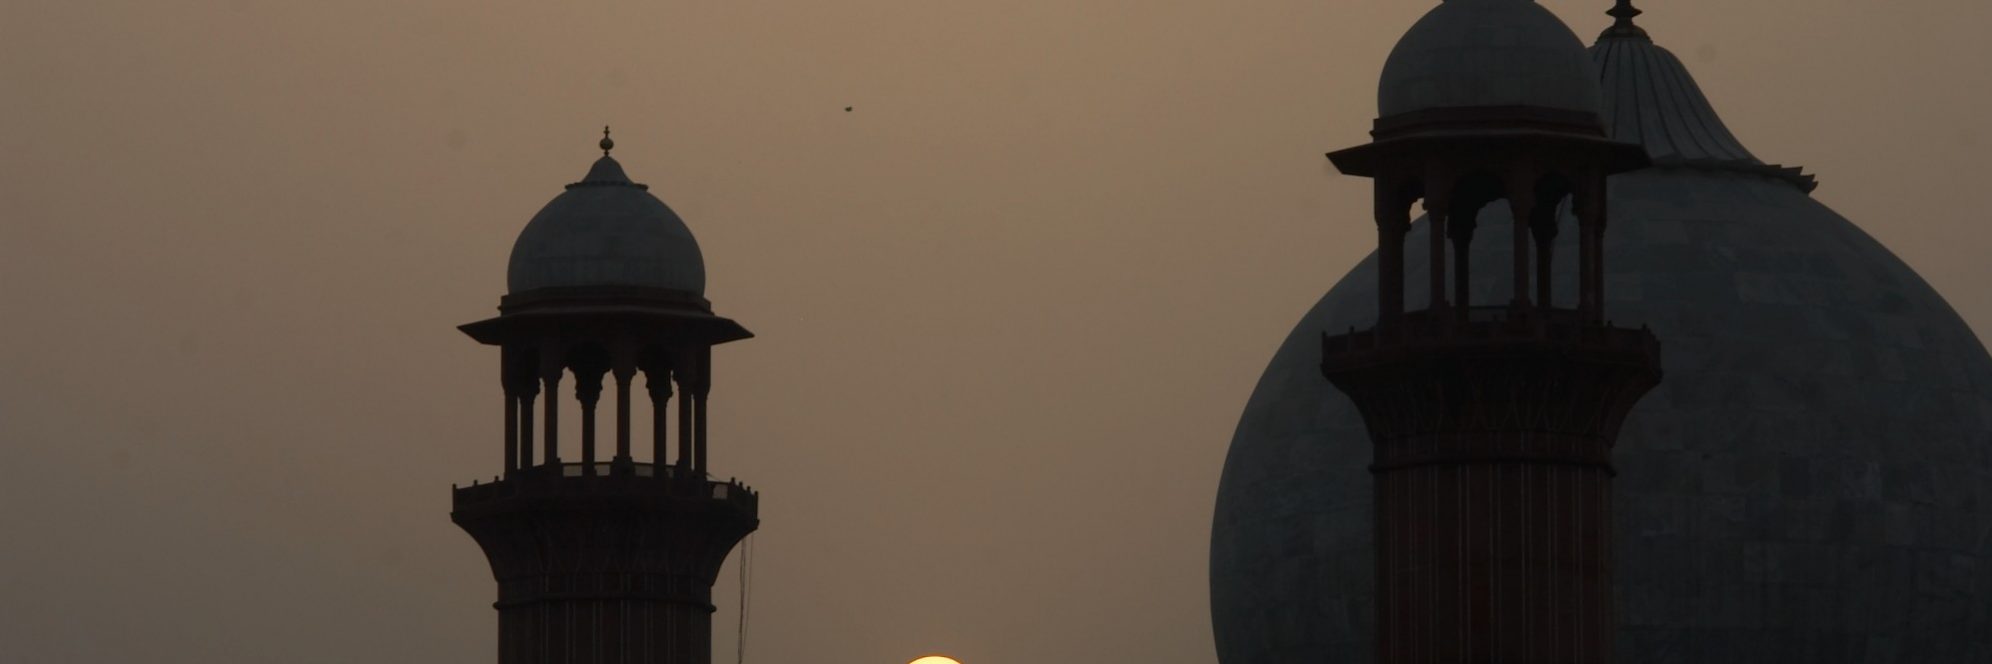 Sunset behind Badshahi Mosque, Lahore